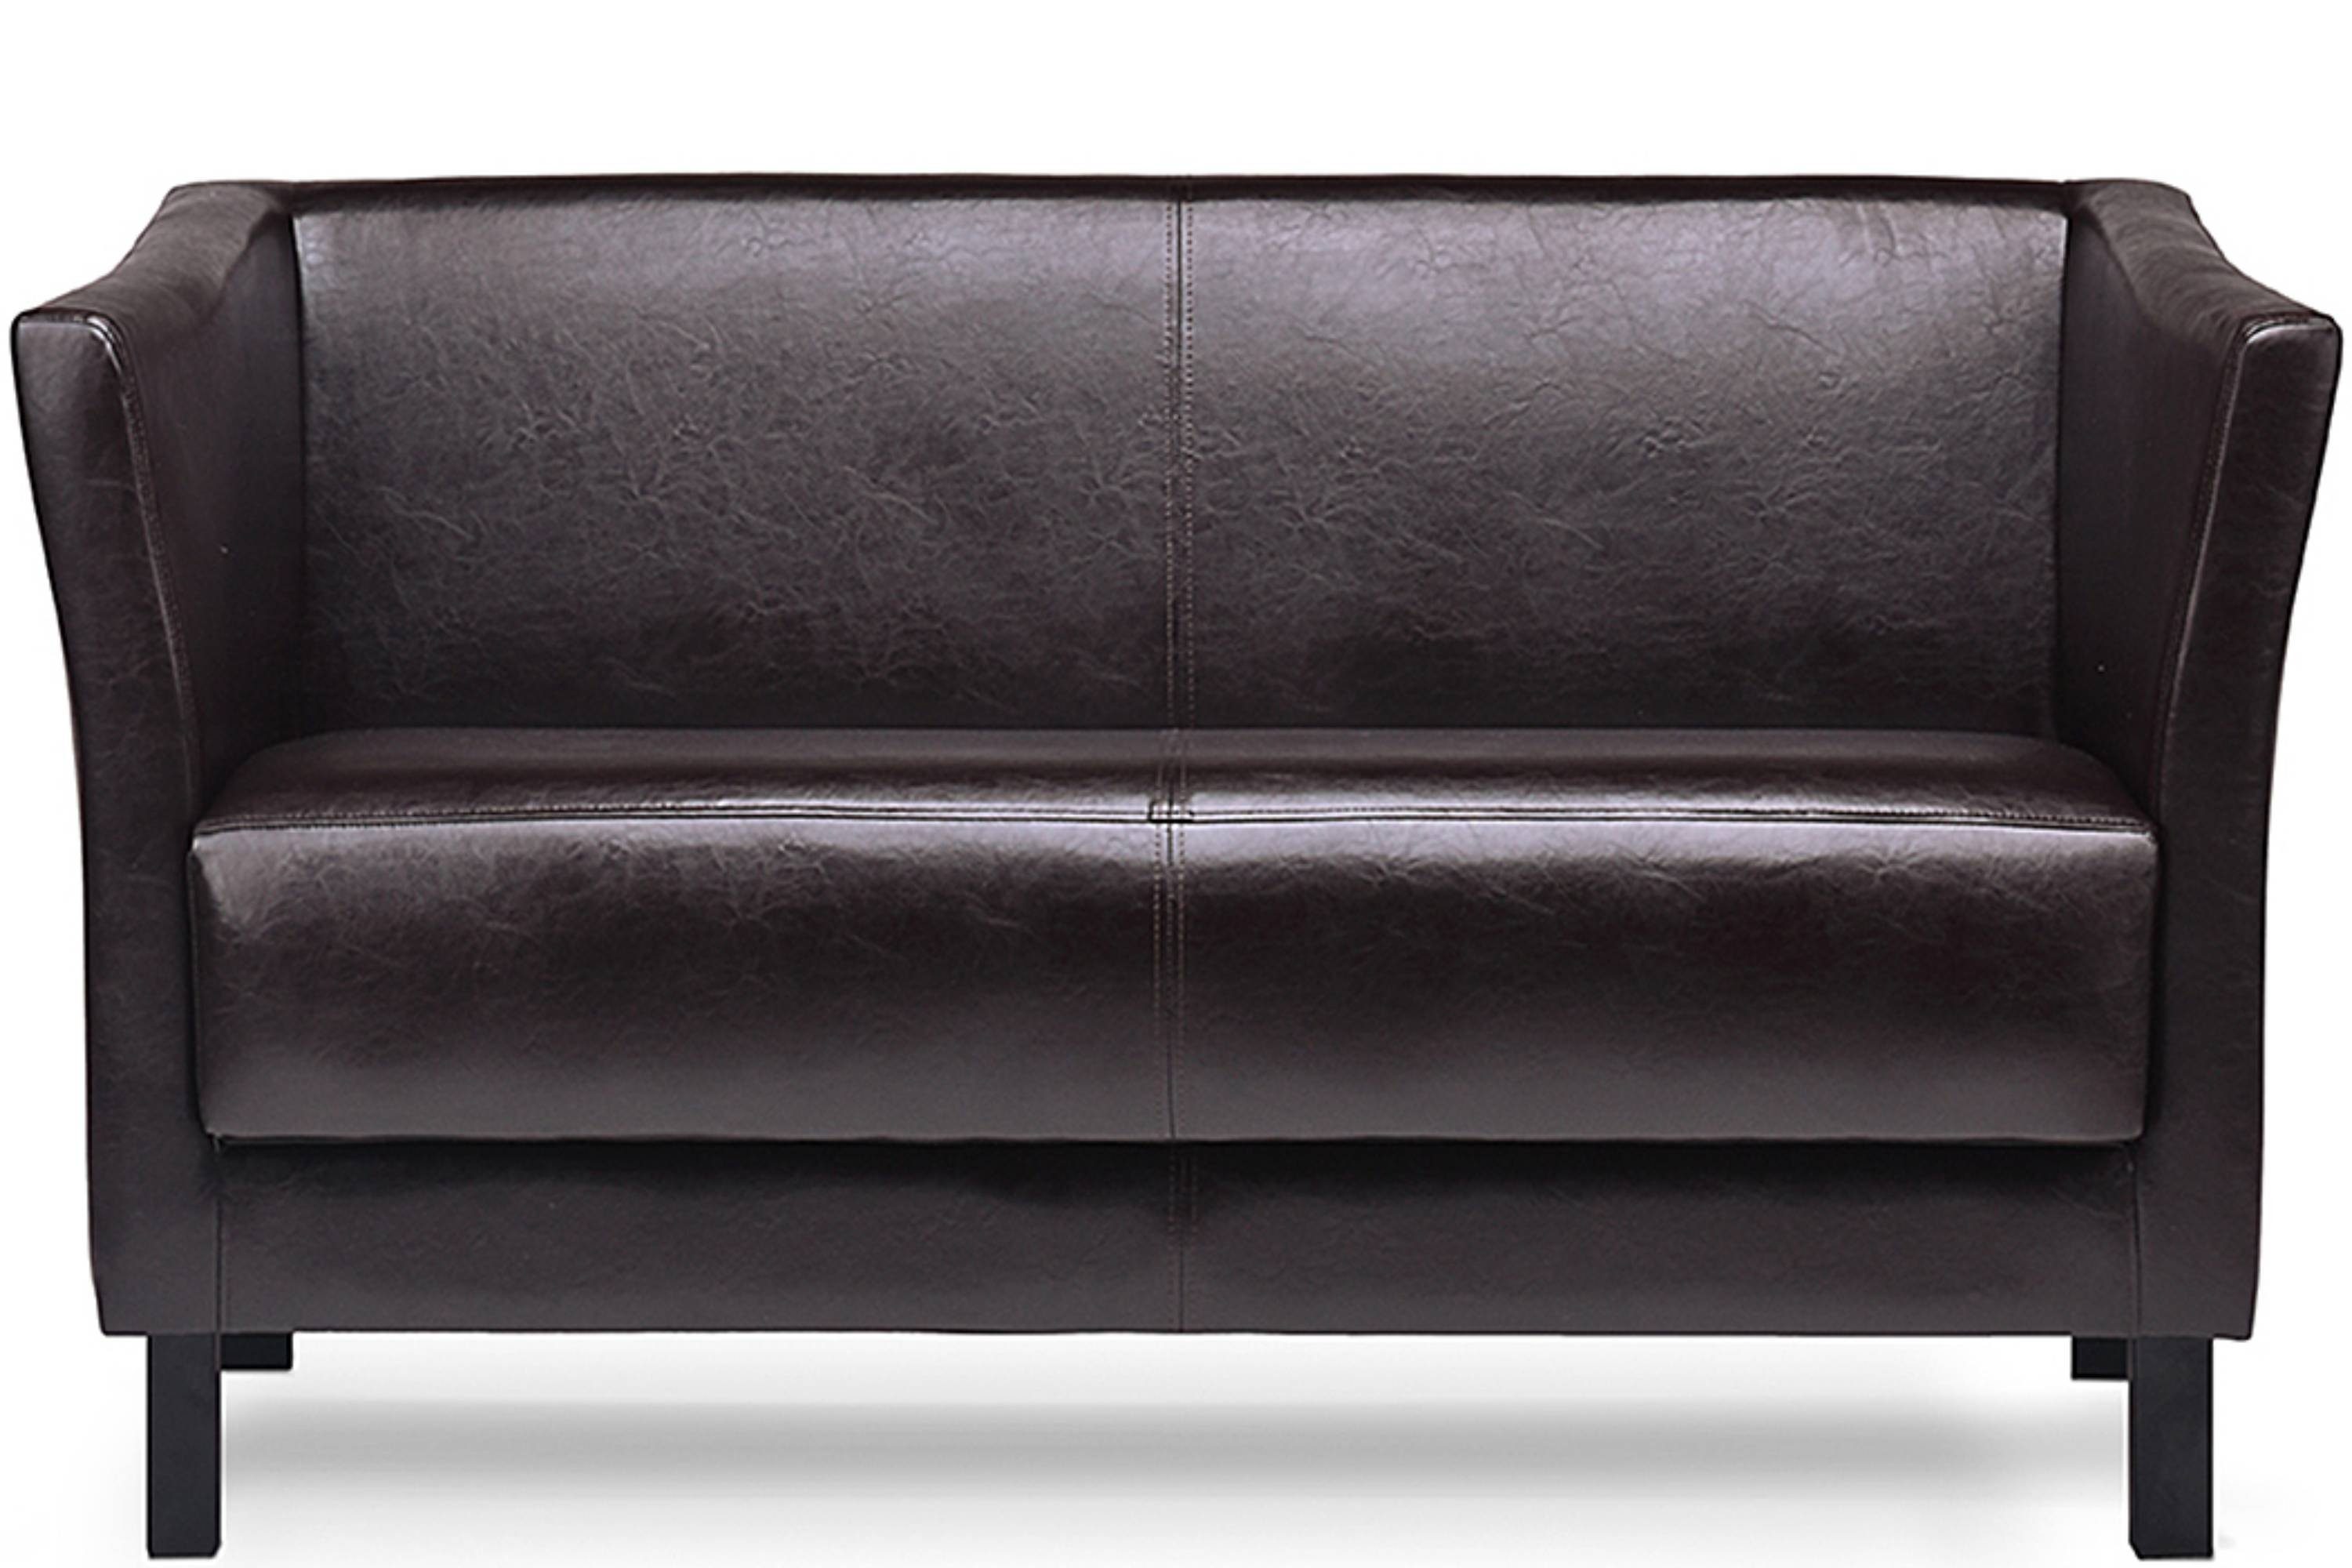 Konsimo 2-Sitzer ESPECTO Sofa 2 Personen, weiche Sitzfläche und hohe Rückenlehne, Kunstleder, hohe Massivholzbeine dunkelbraun | dunkelbraun